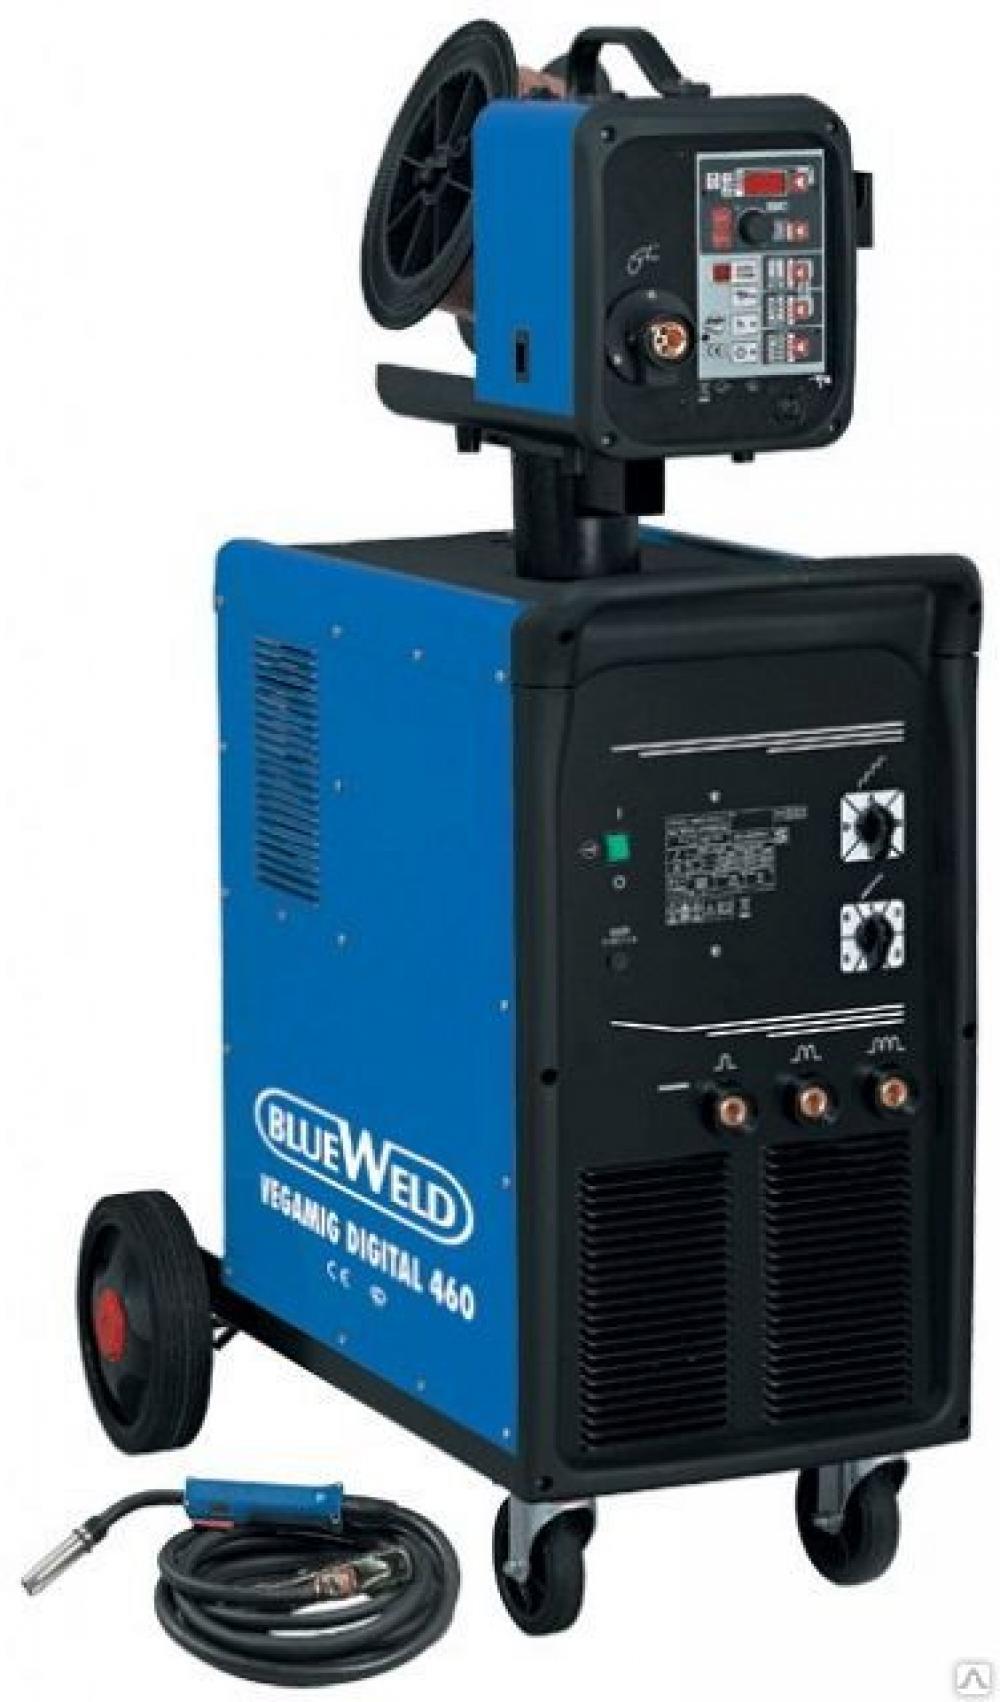 Цифровой сварочный полуавтомат Blueweld Vegamig Digital 460 R.A. с водяным охладителем и механизмом подачи проволоки